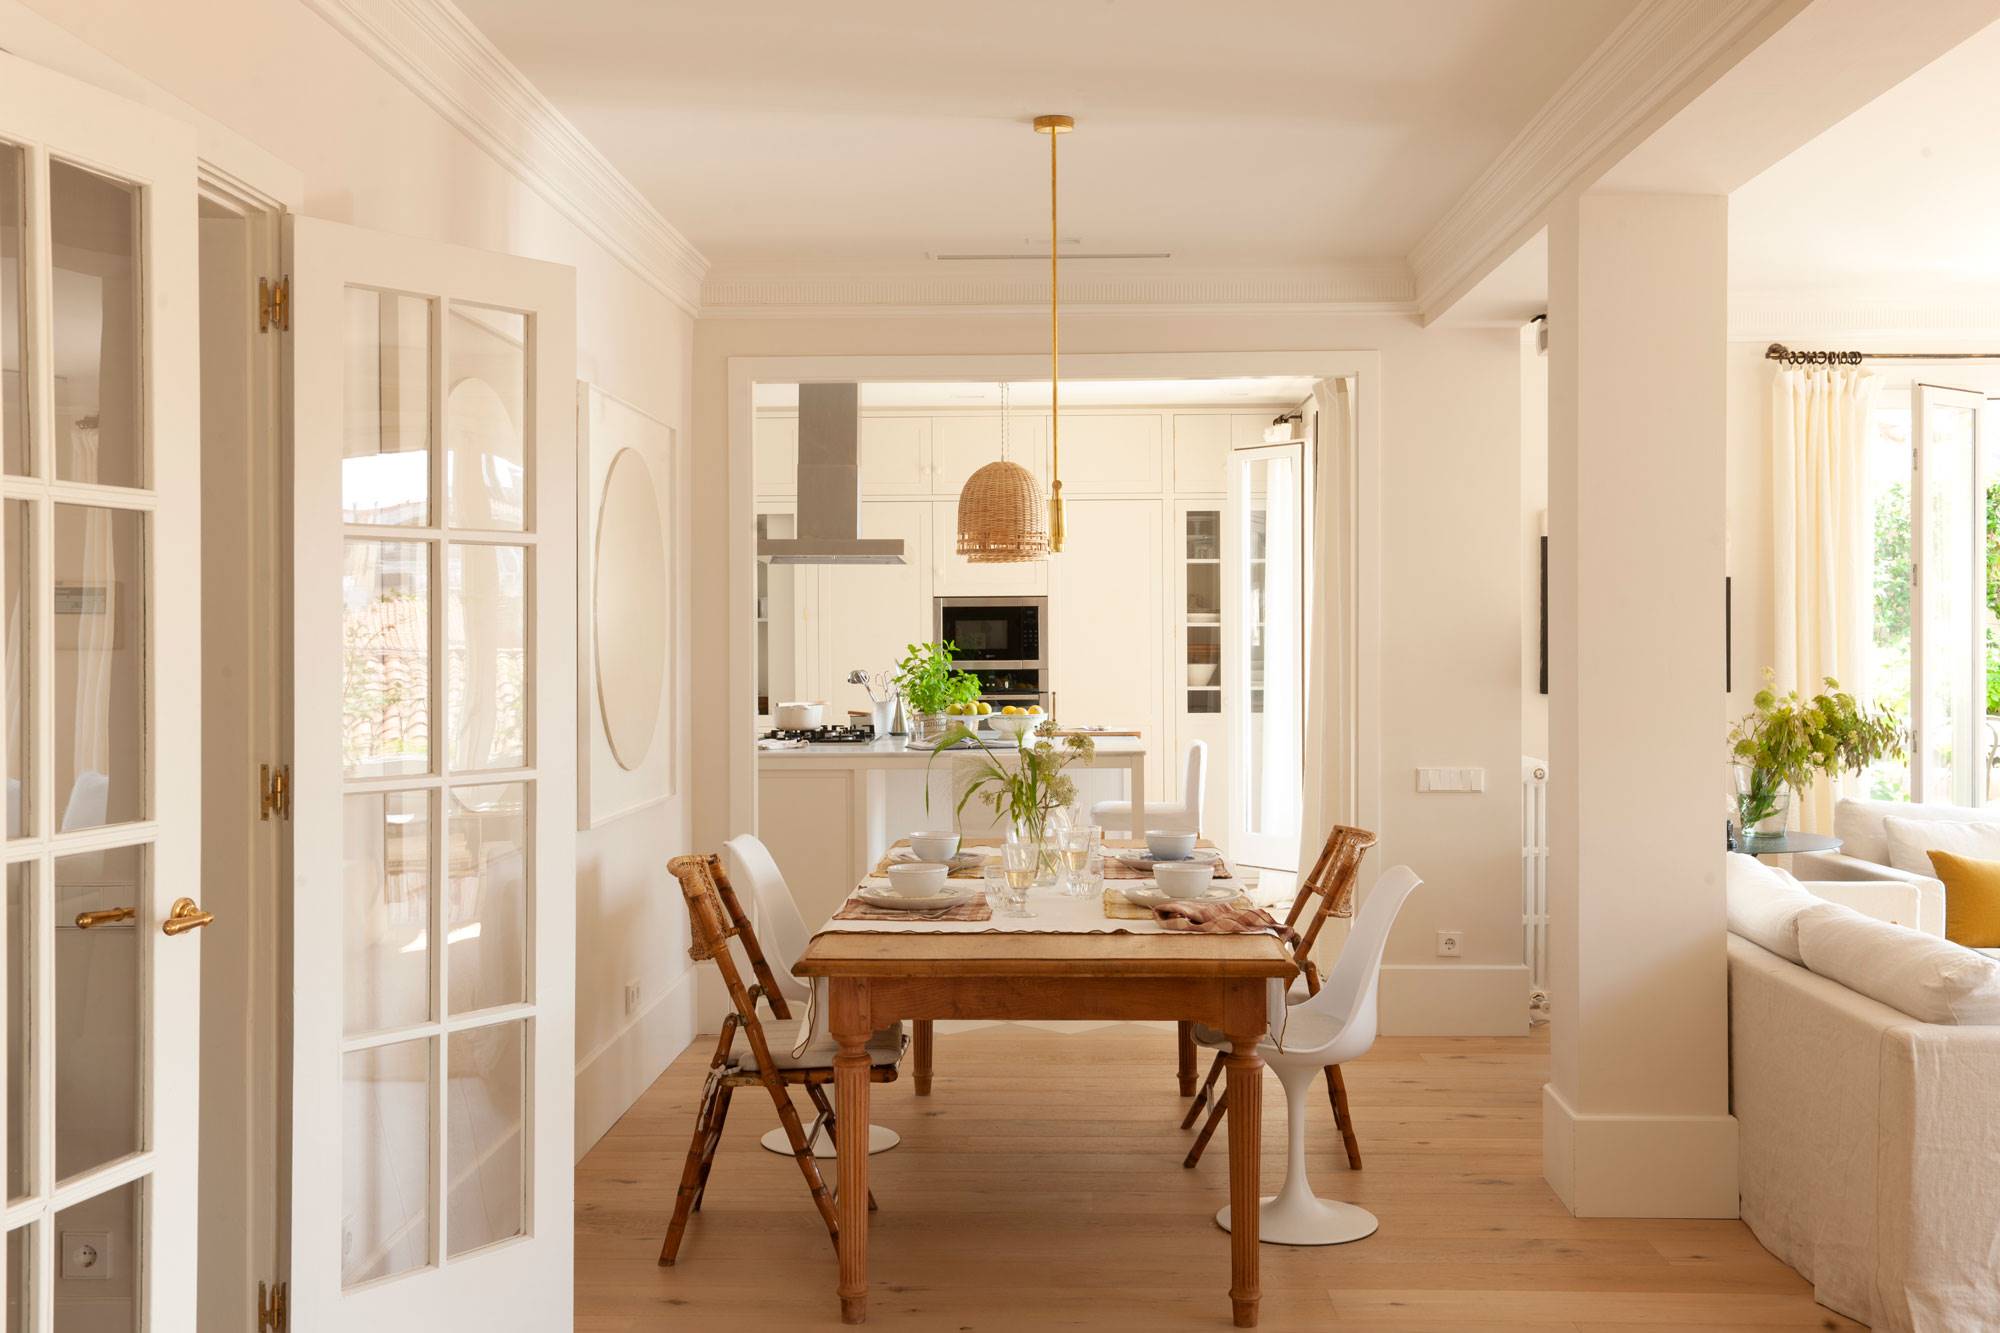 Cómo integrar cocina, salón y comedor en un mismo espacio.